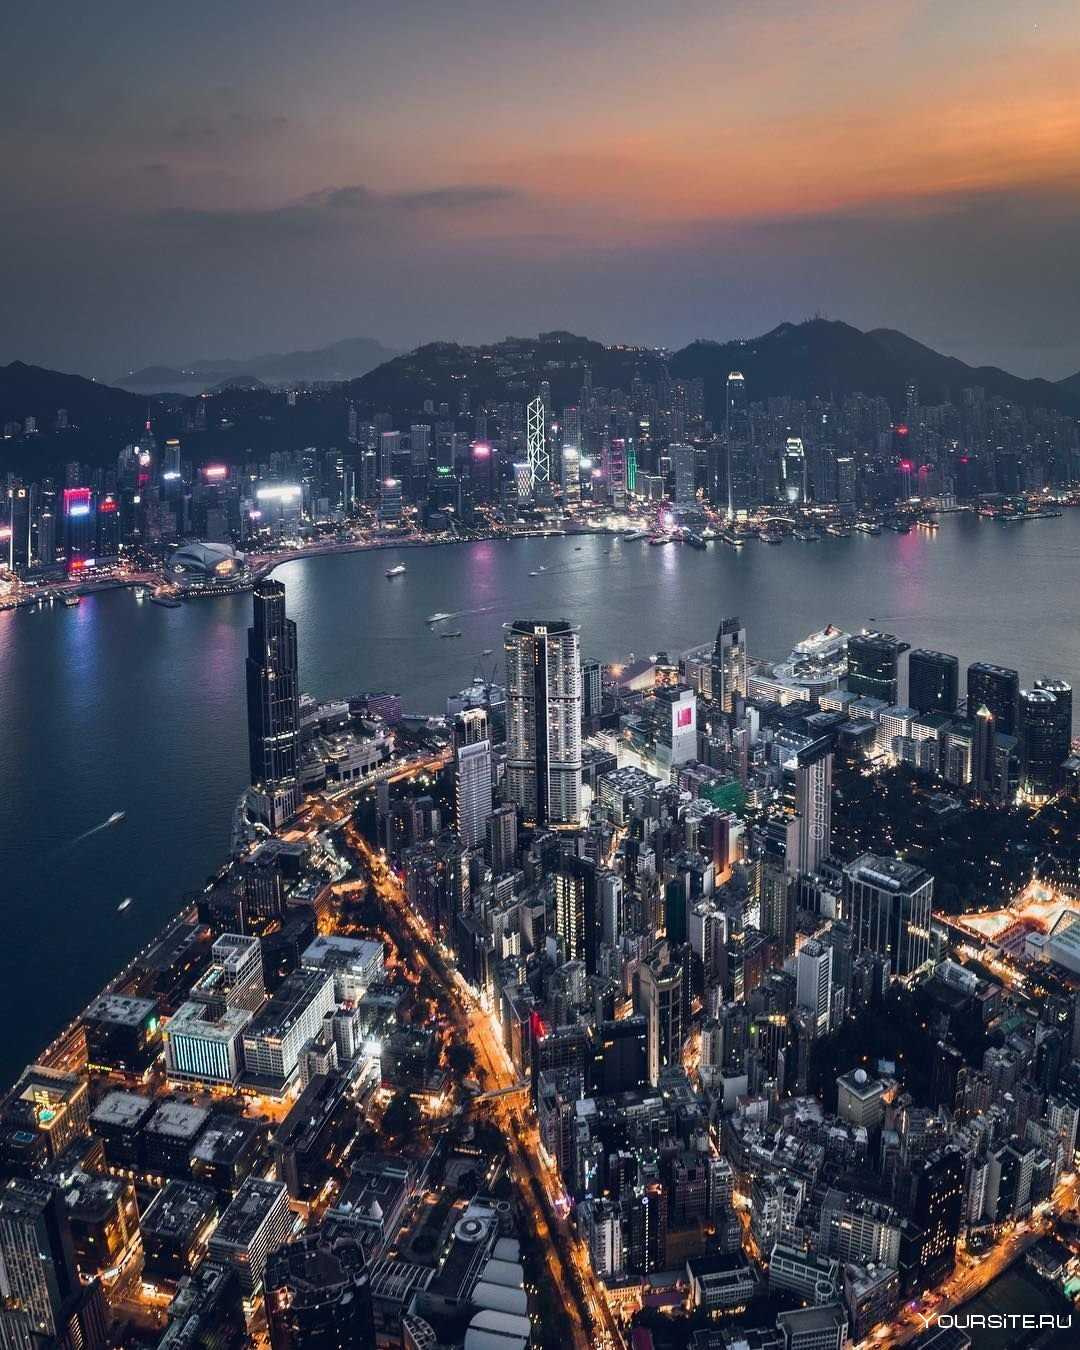 Гонконг столица какой страны, где находится, китай это или нет, население гонконга